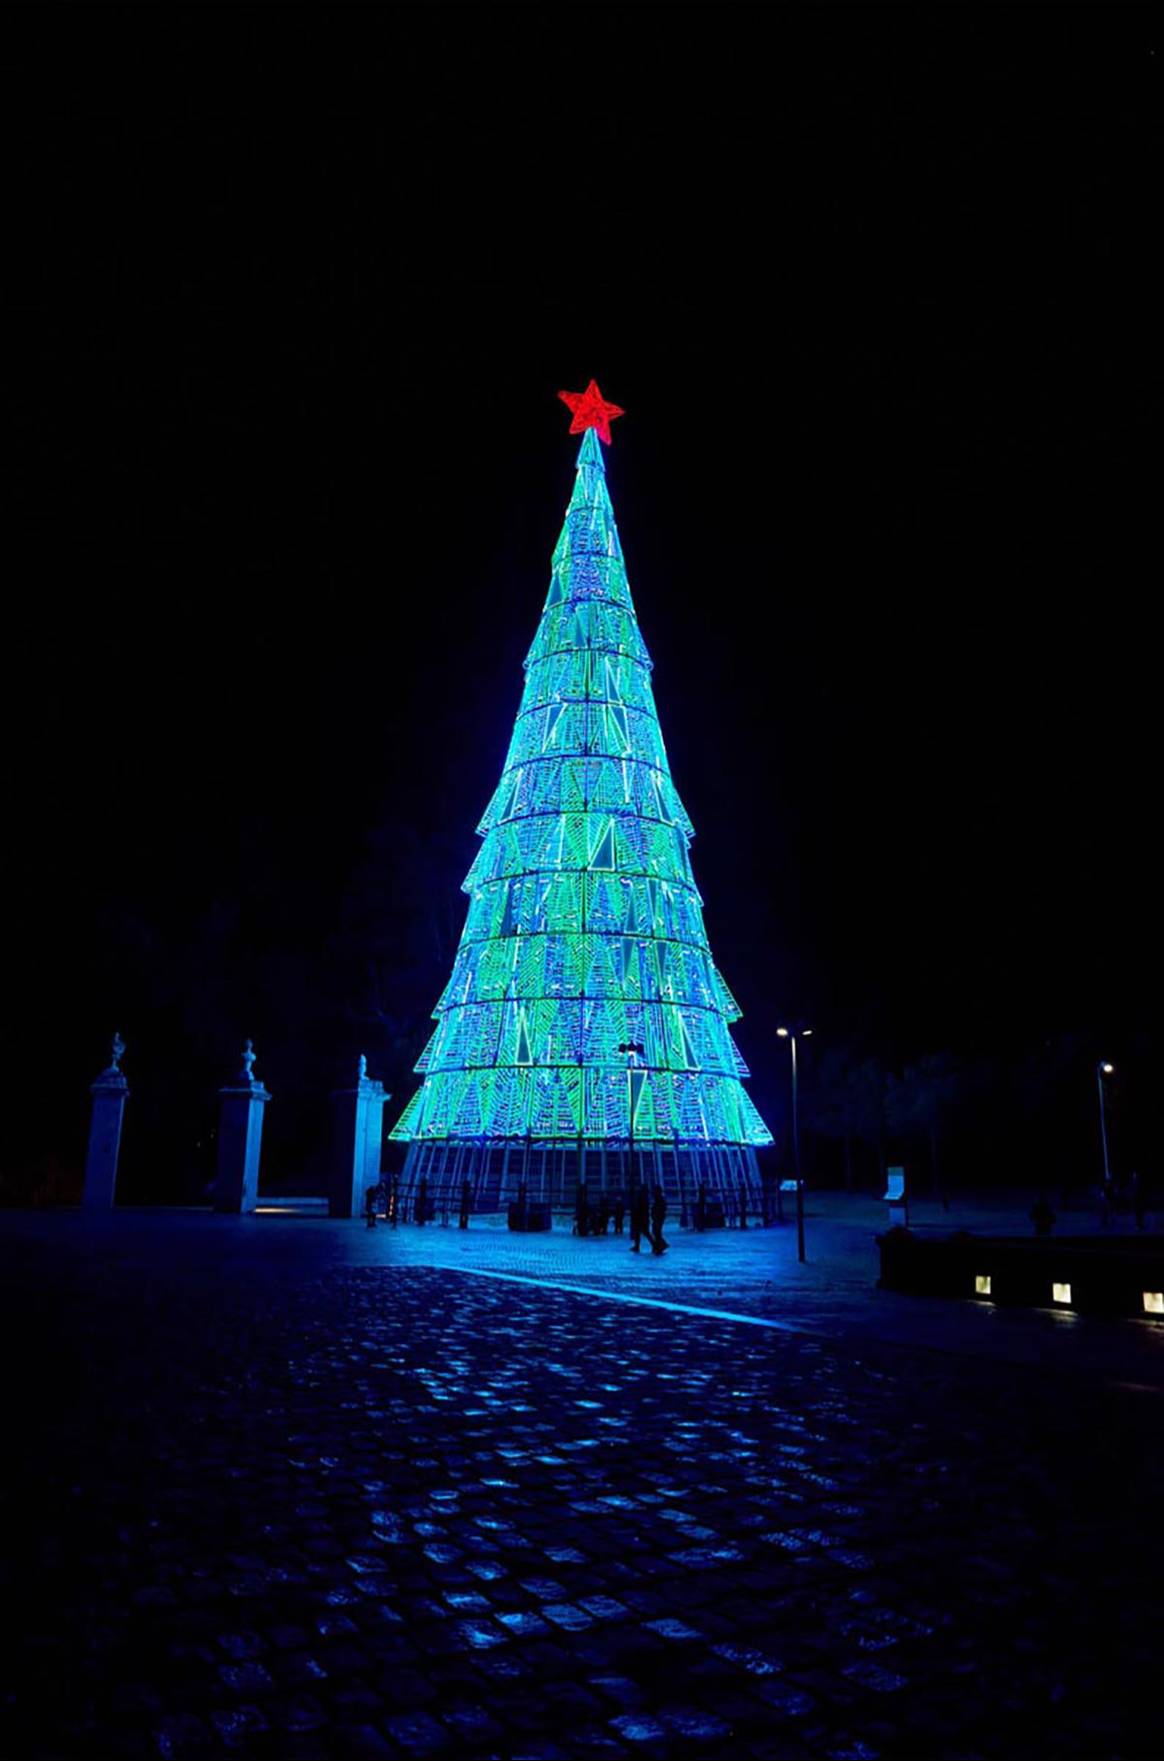 Photo Credits: Árbol de Navidad diseñado por Modesto Lomba, como director creativo de Devota&Lomba, en el marco de la colaboración establecida con Acme para el diseño del alumbrado navideño de Madrid. Fotografía de cortesía.